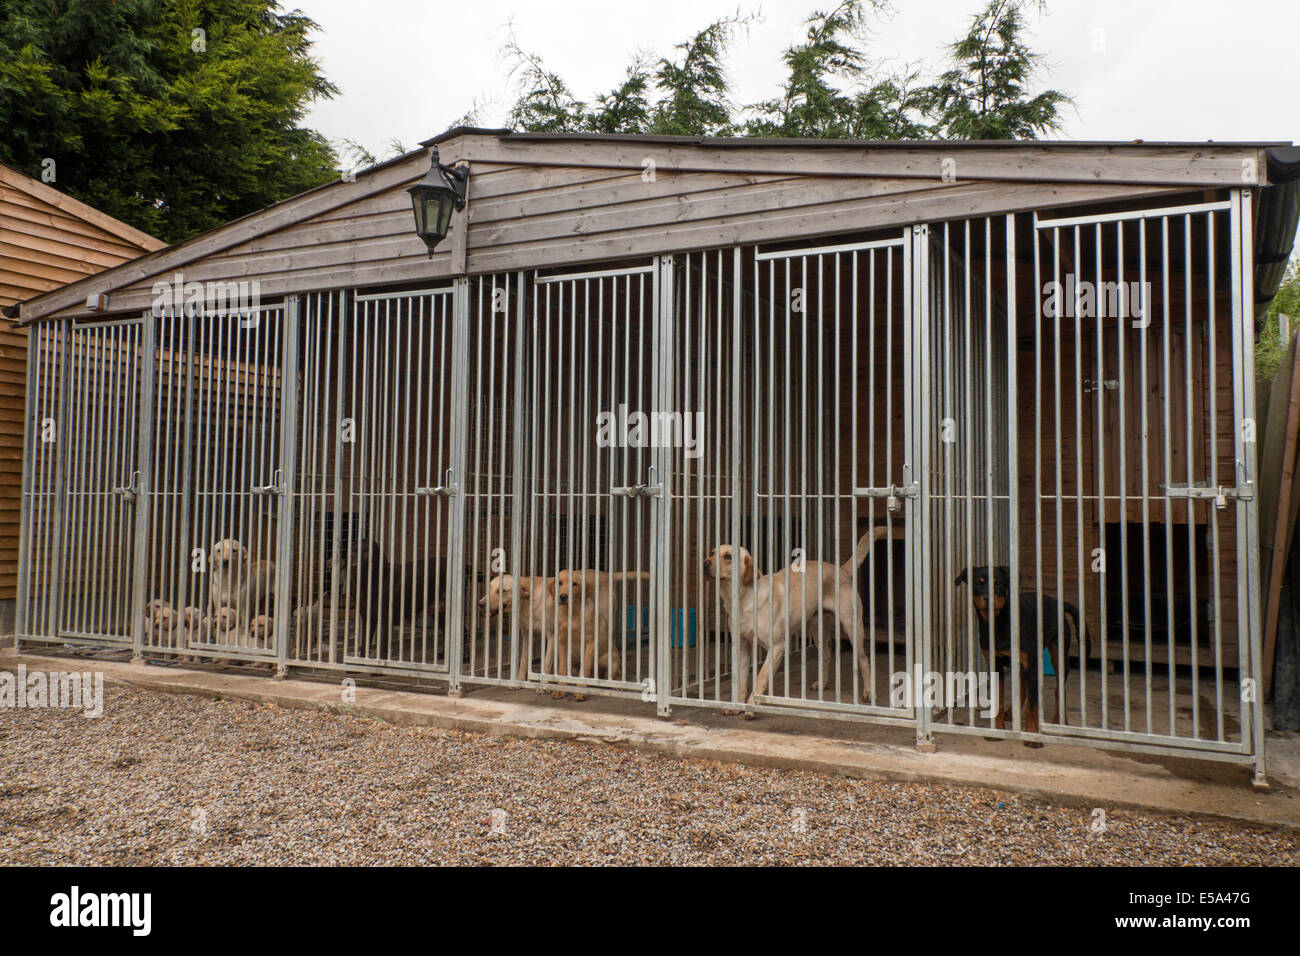 Chien de travail informatique - labrador jaune avec les chiots Rottweiler, cage sur l'extrémité droite Banque D'Images